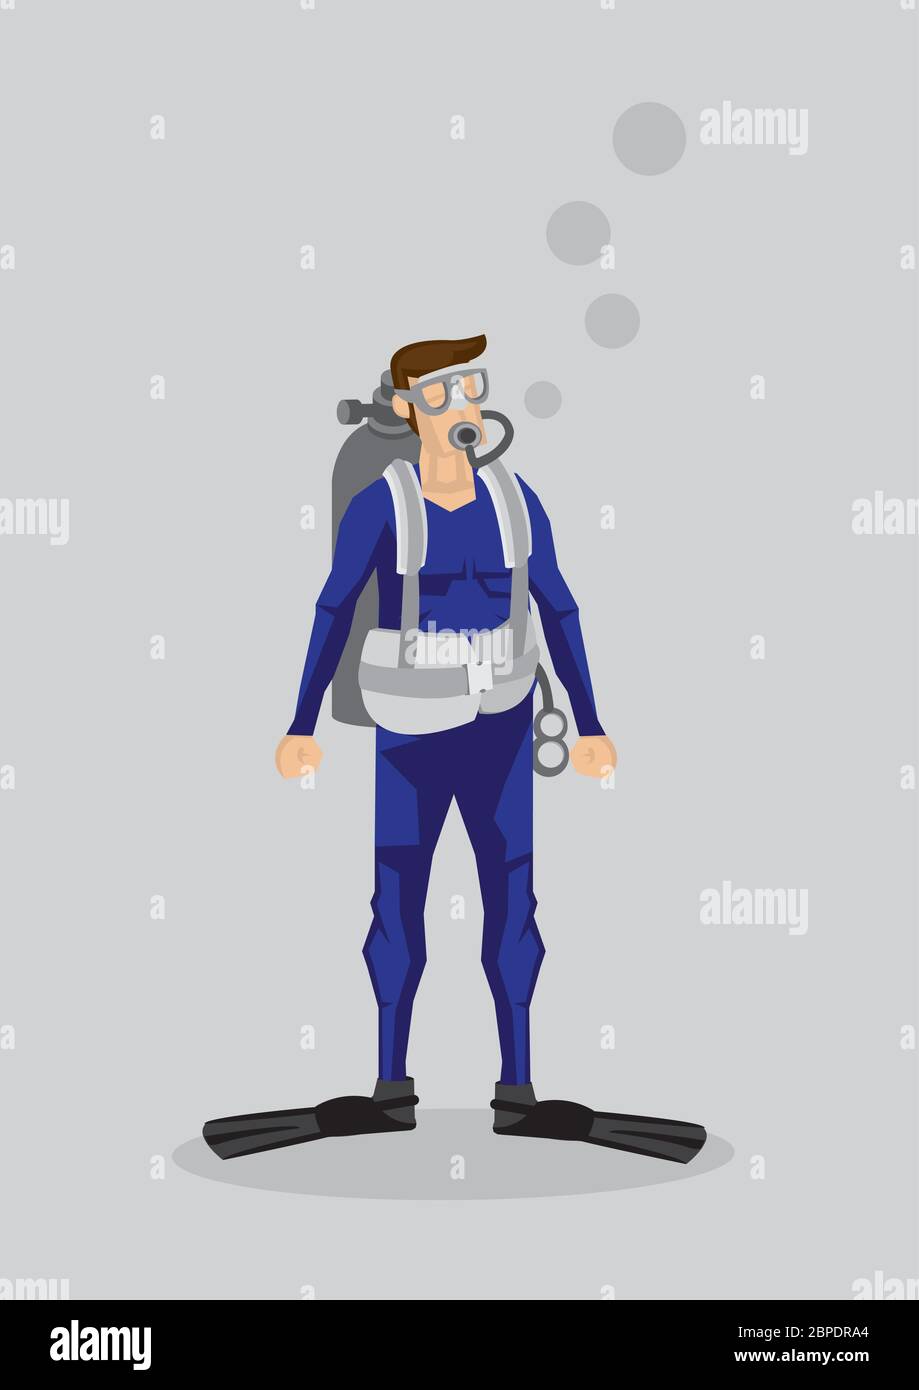 Vektor-Illustration eines Taucher Charakter in Tauchanzug, Schwimmflossen und Sauerstofftank isoliert auf klarem Hintergrund. Stock Vektor